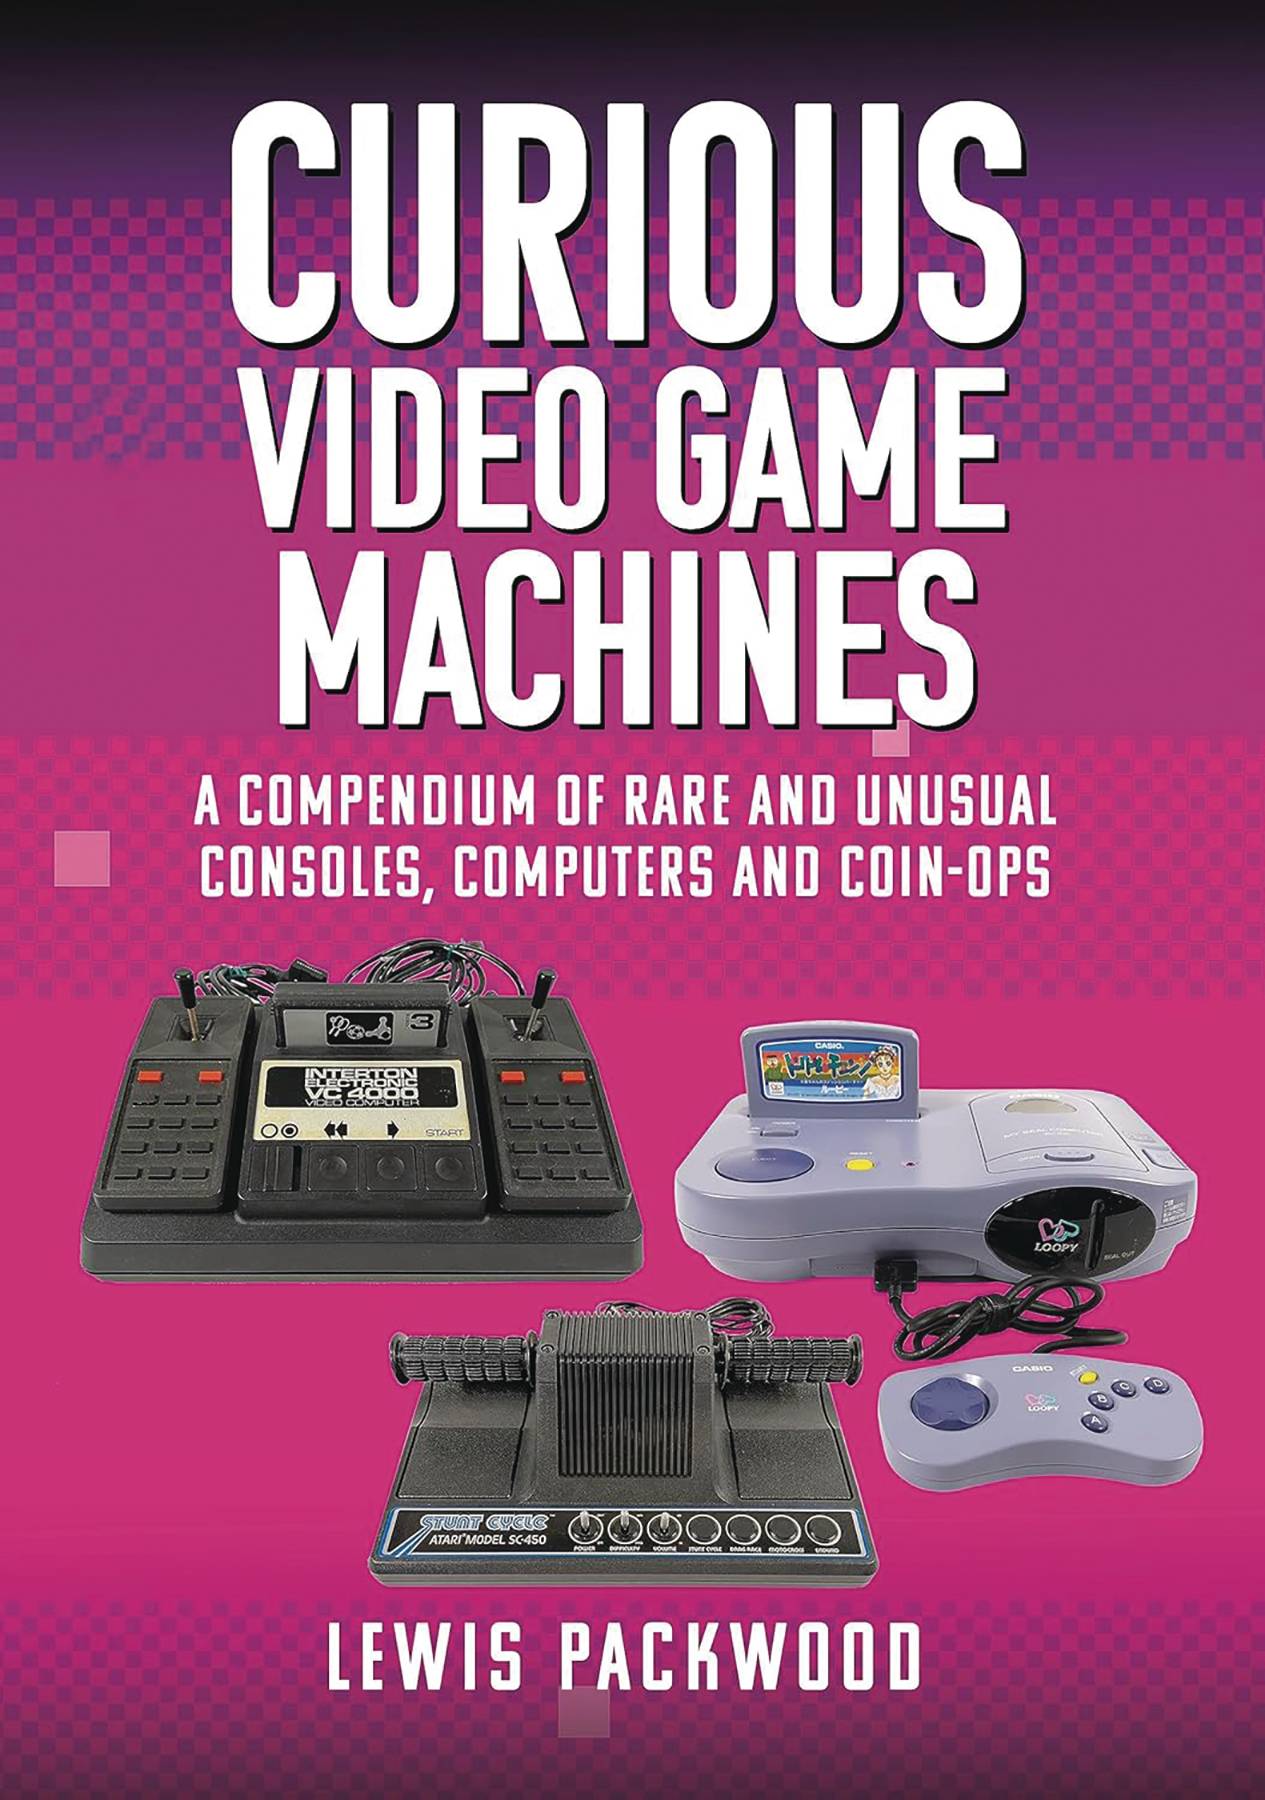 CURIOUS VIDEO GAME MACHINES COMPENDIUM OF RARE CONSOLES HC (